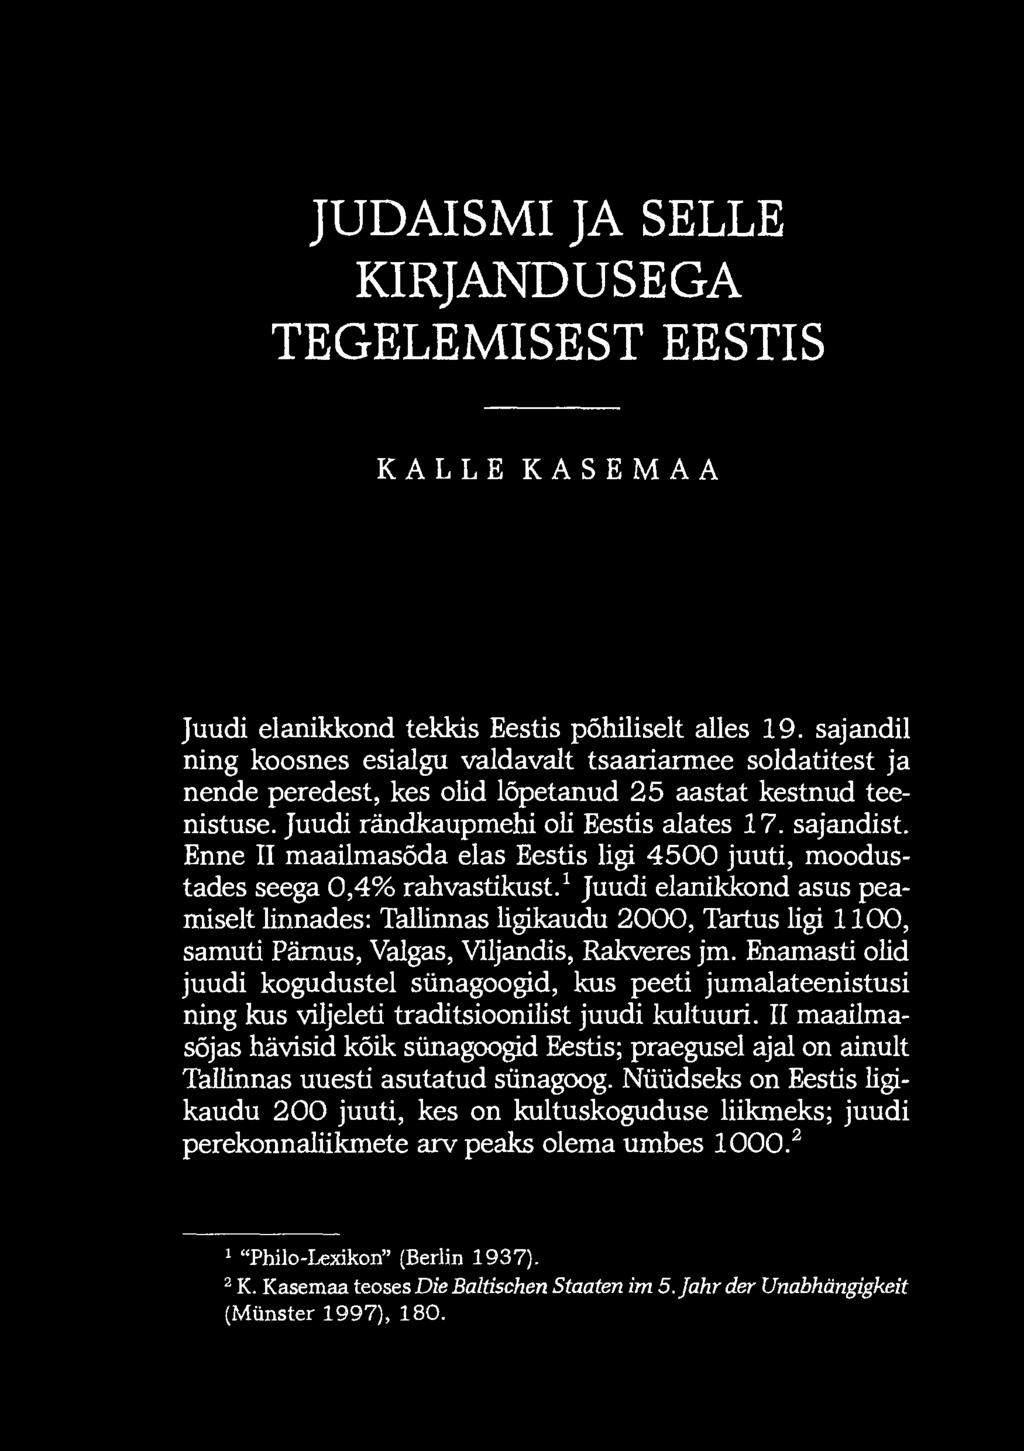 Enne II maailmasõda elas Eestis ligi 4500 juuti, moodustades seega 0,4% rahvastikust.